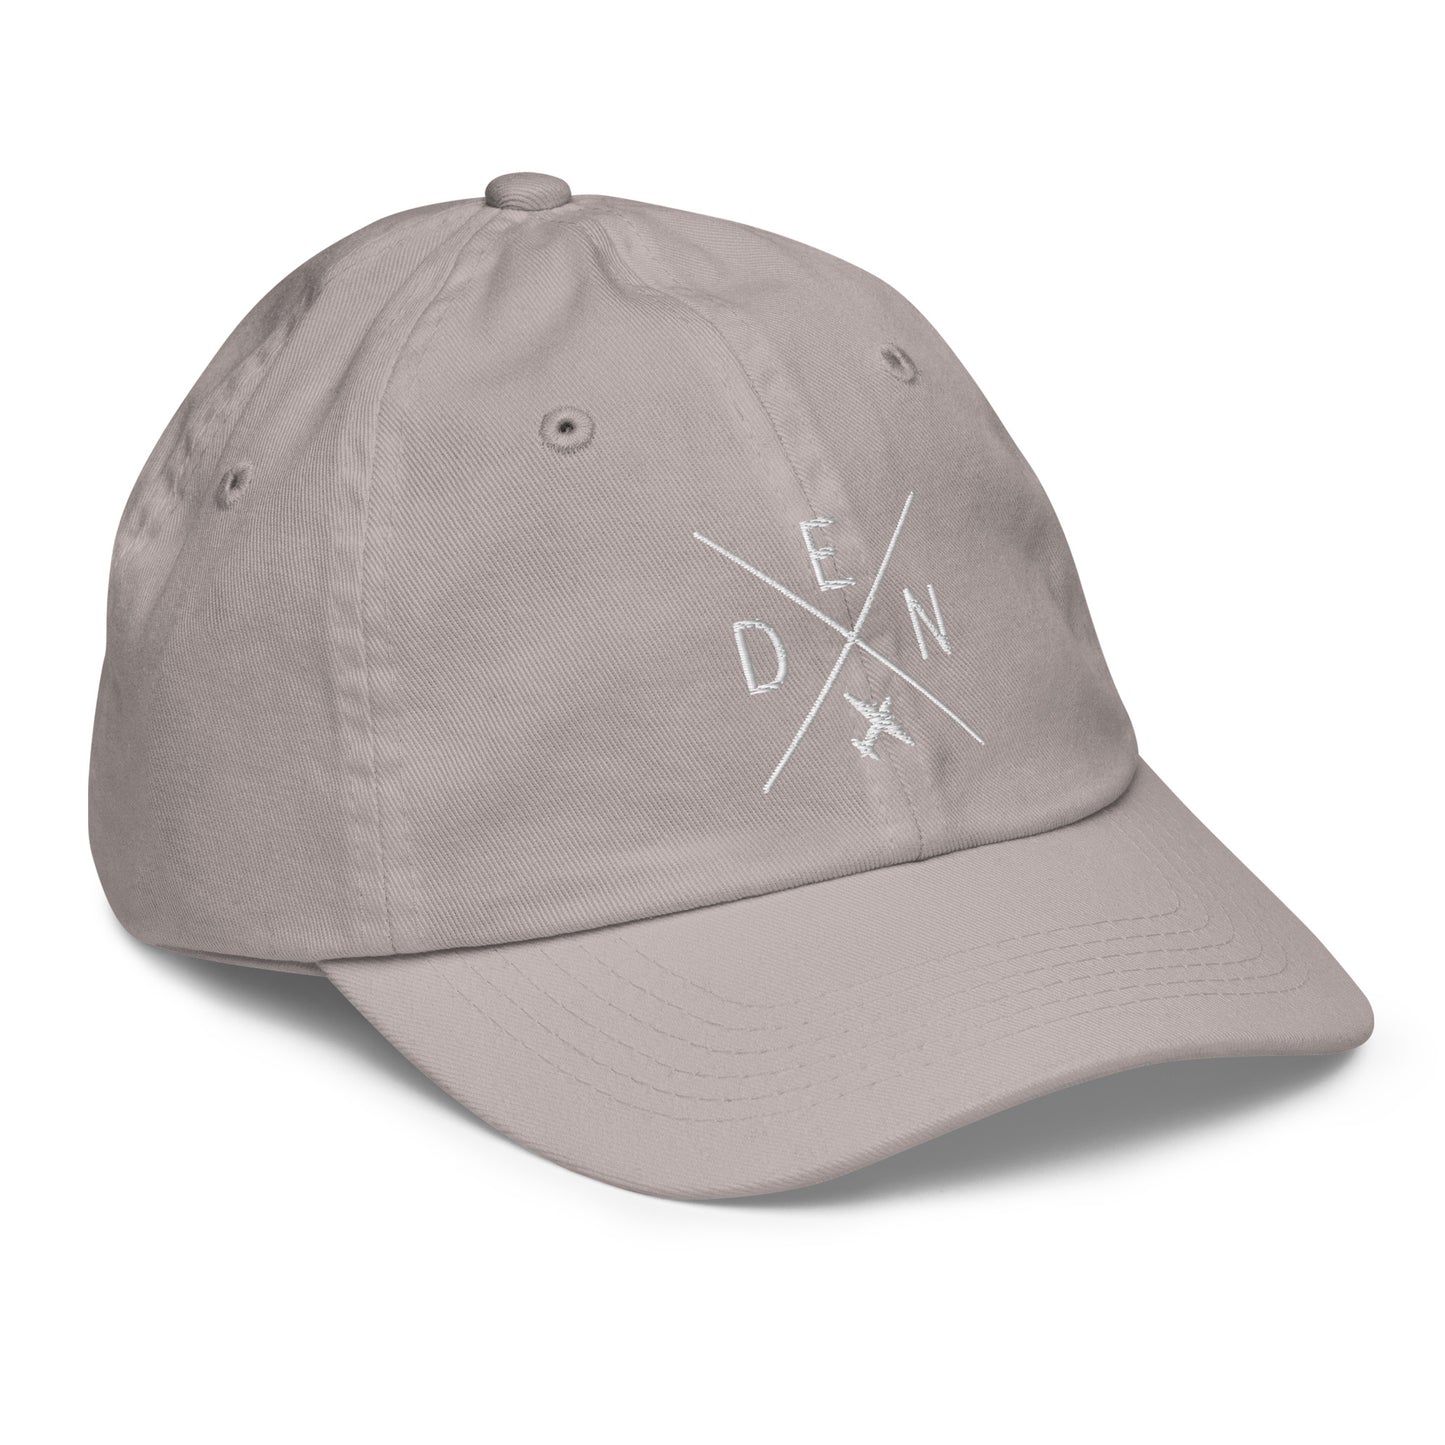 Crossed-X Kid's Baseball Cap - White • DEN Denver • YHM Designs - Image 26